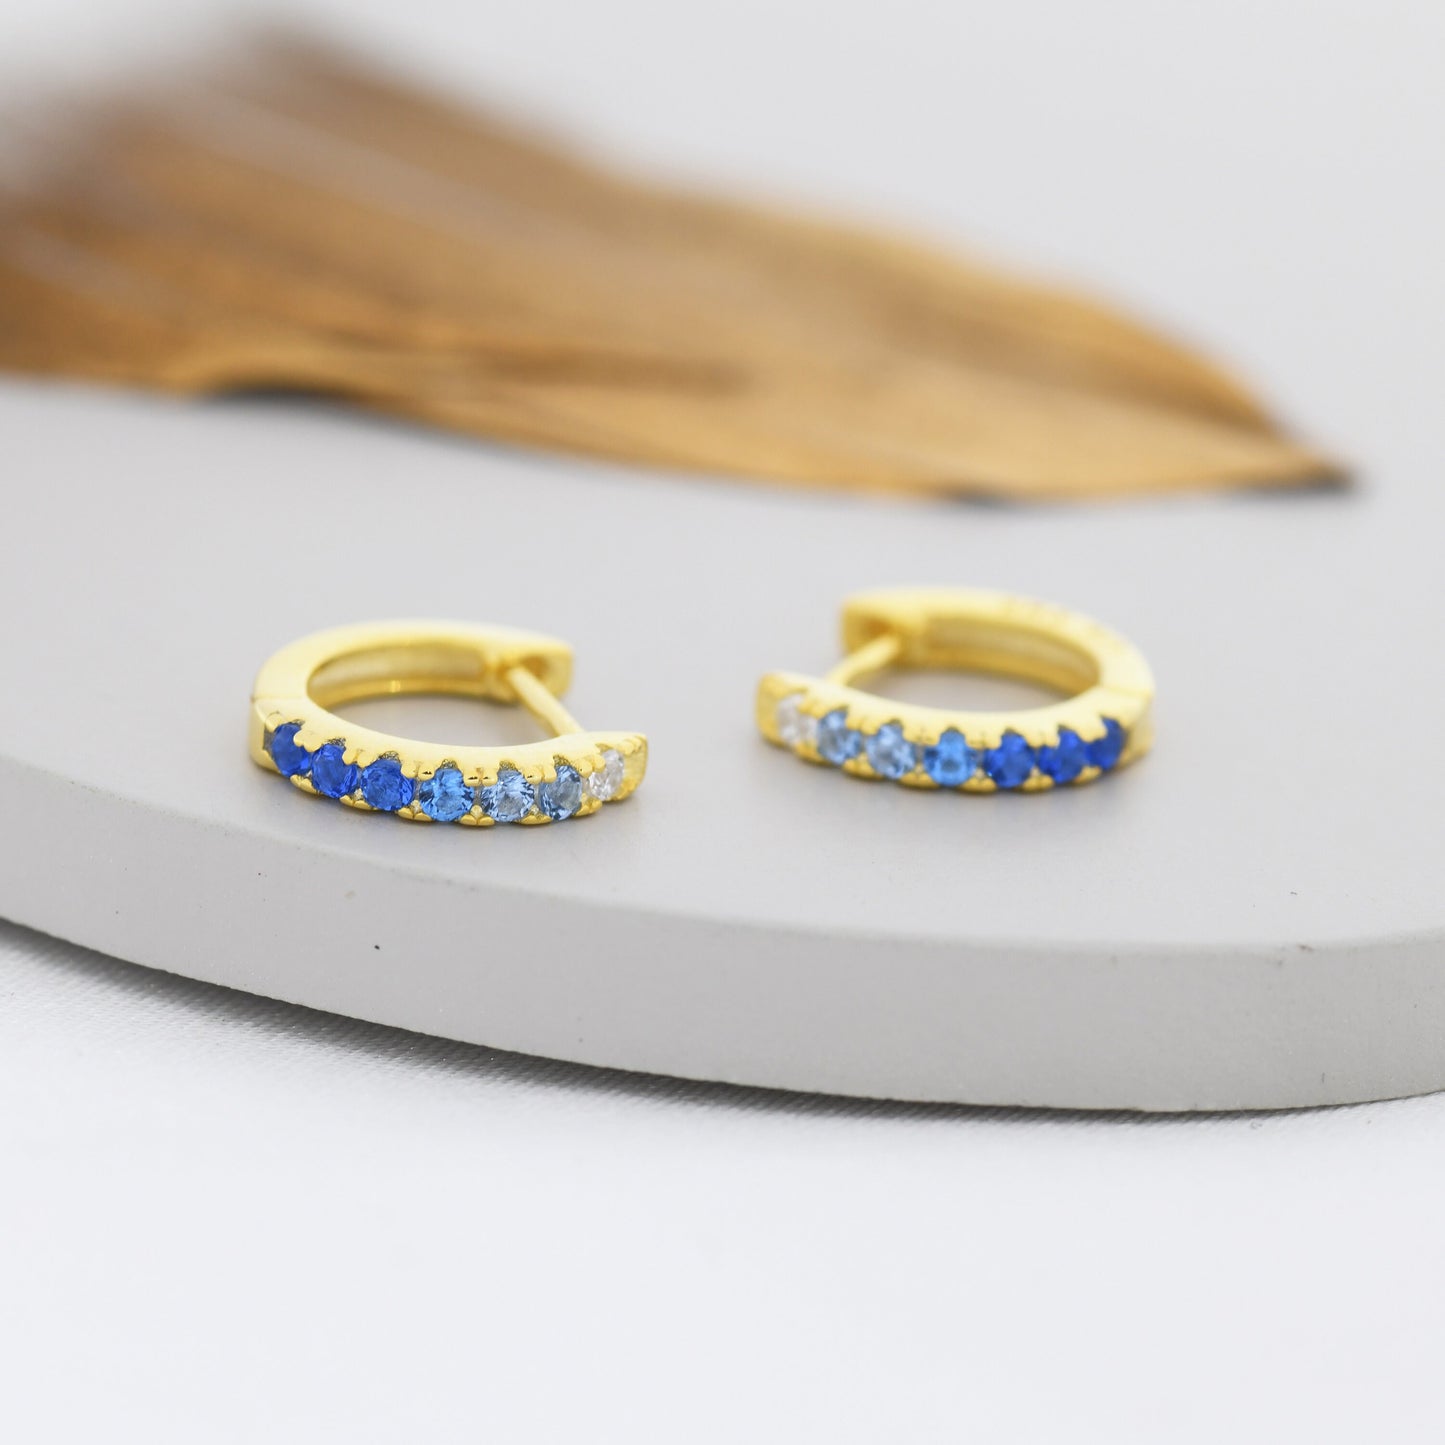 Sapphire Blue Ombre CZ Huggie Hoops in Sterling Silver, Silver or Gold, Minimalist Hoop Earrings, 8mm Hoops, cartilage hoops, Gradient